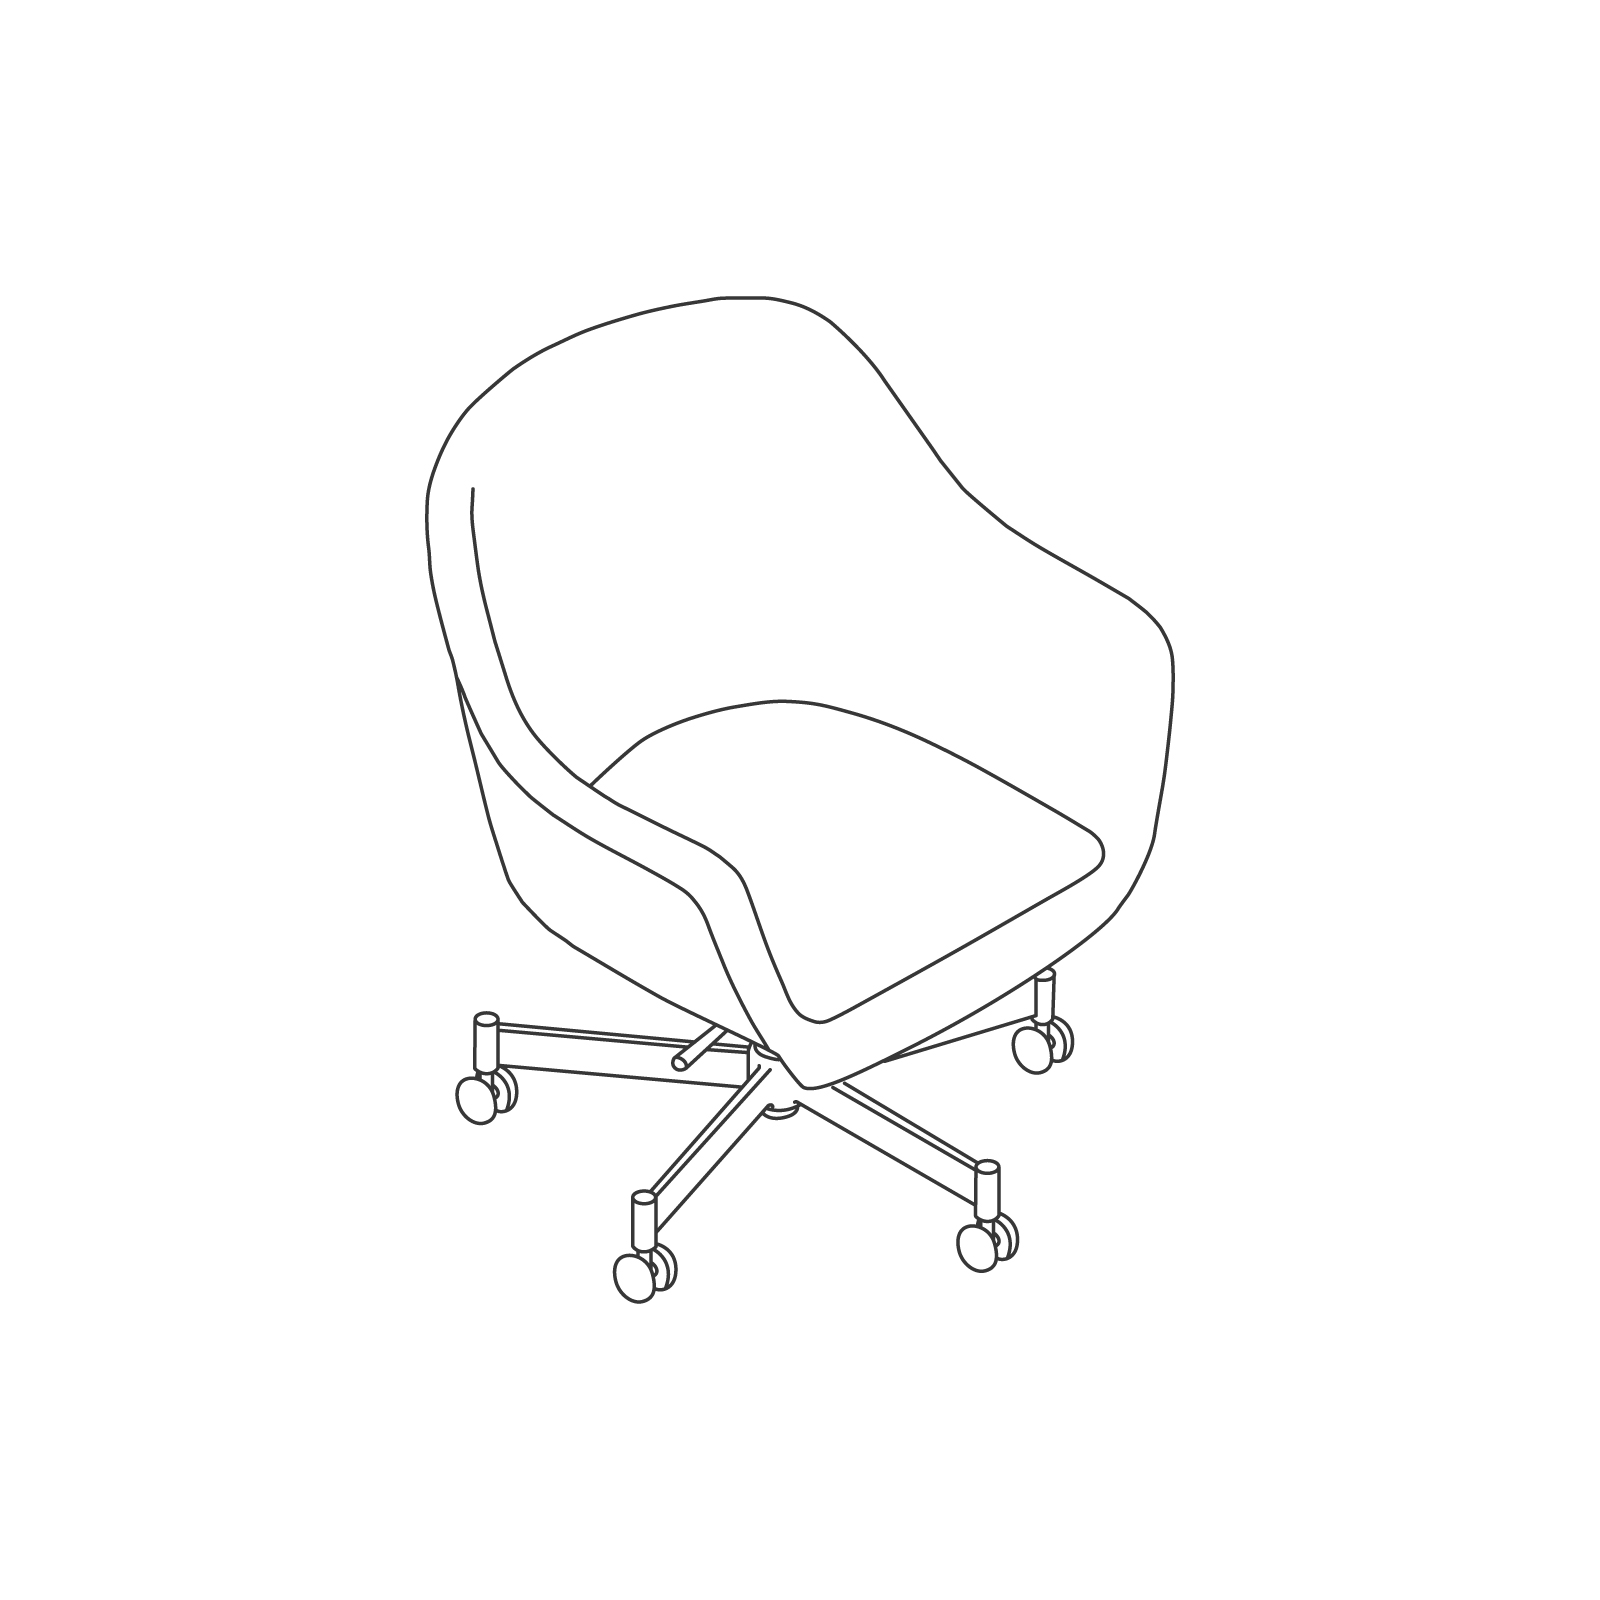 线描图 - Bumper座椅